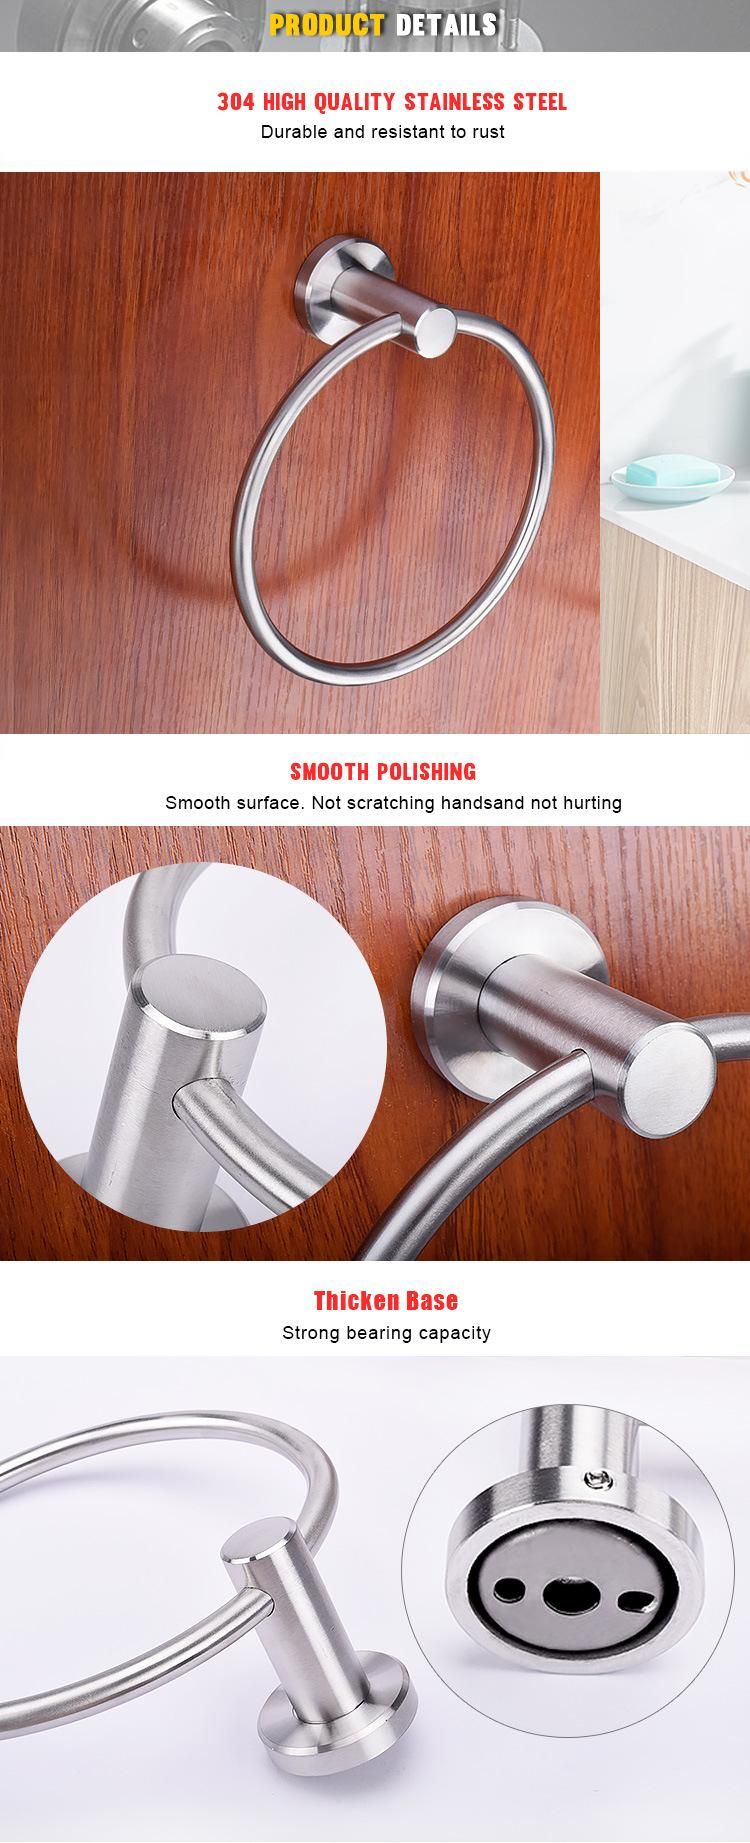 Hotel Bathroom Accessories 304 Stainless Steel Towel Holder Towel Ring